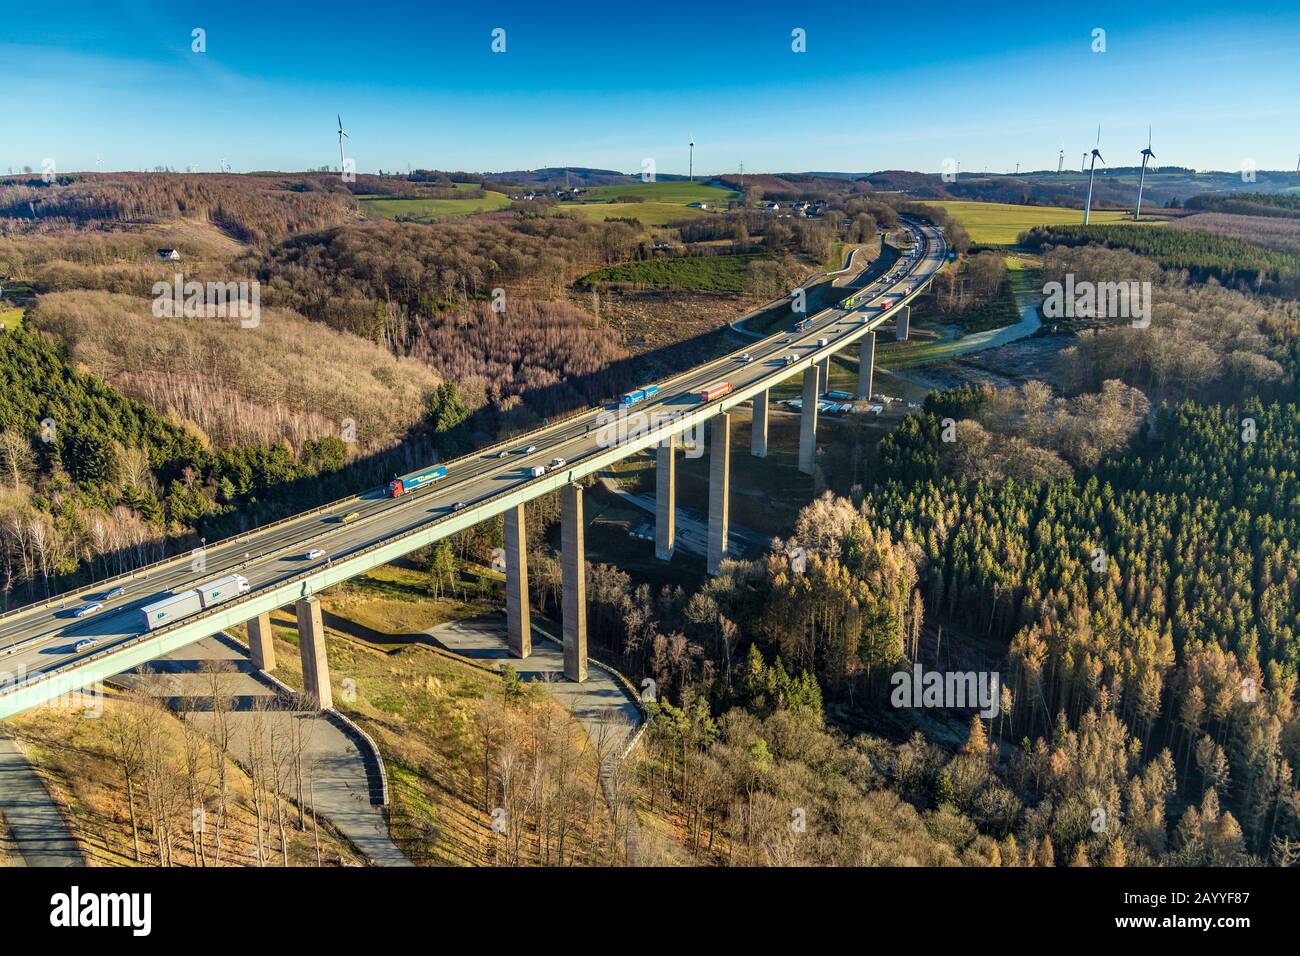 Foto aerea, volmetal, ponte autostradale A45 Oberdelstern, Hagen, zona della Ruhr, Renania Settentrionale-Vestfalia, Germania, autostrada, ponte autostradale, DE, Europa, la Foto Stock